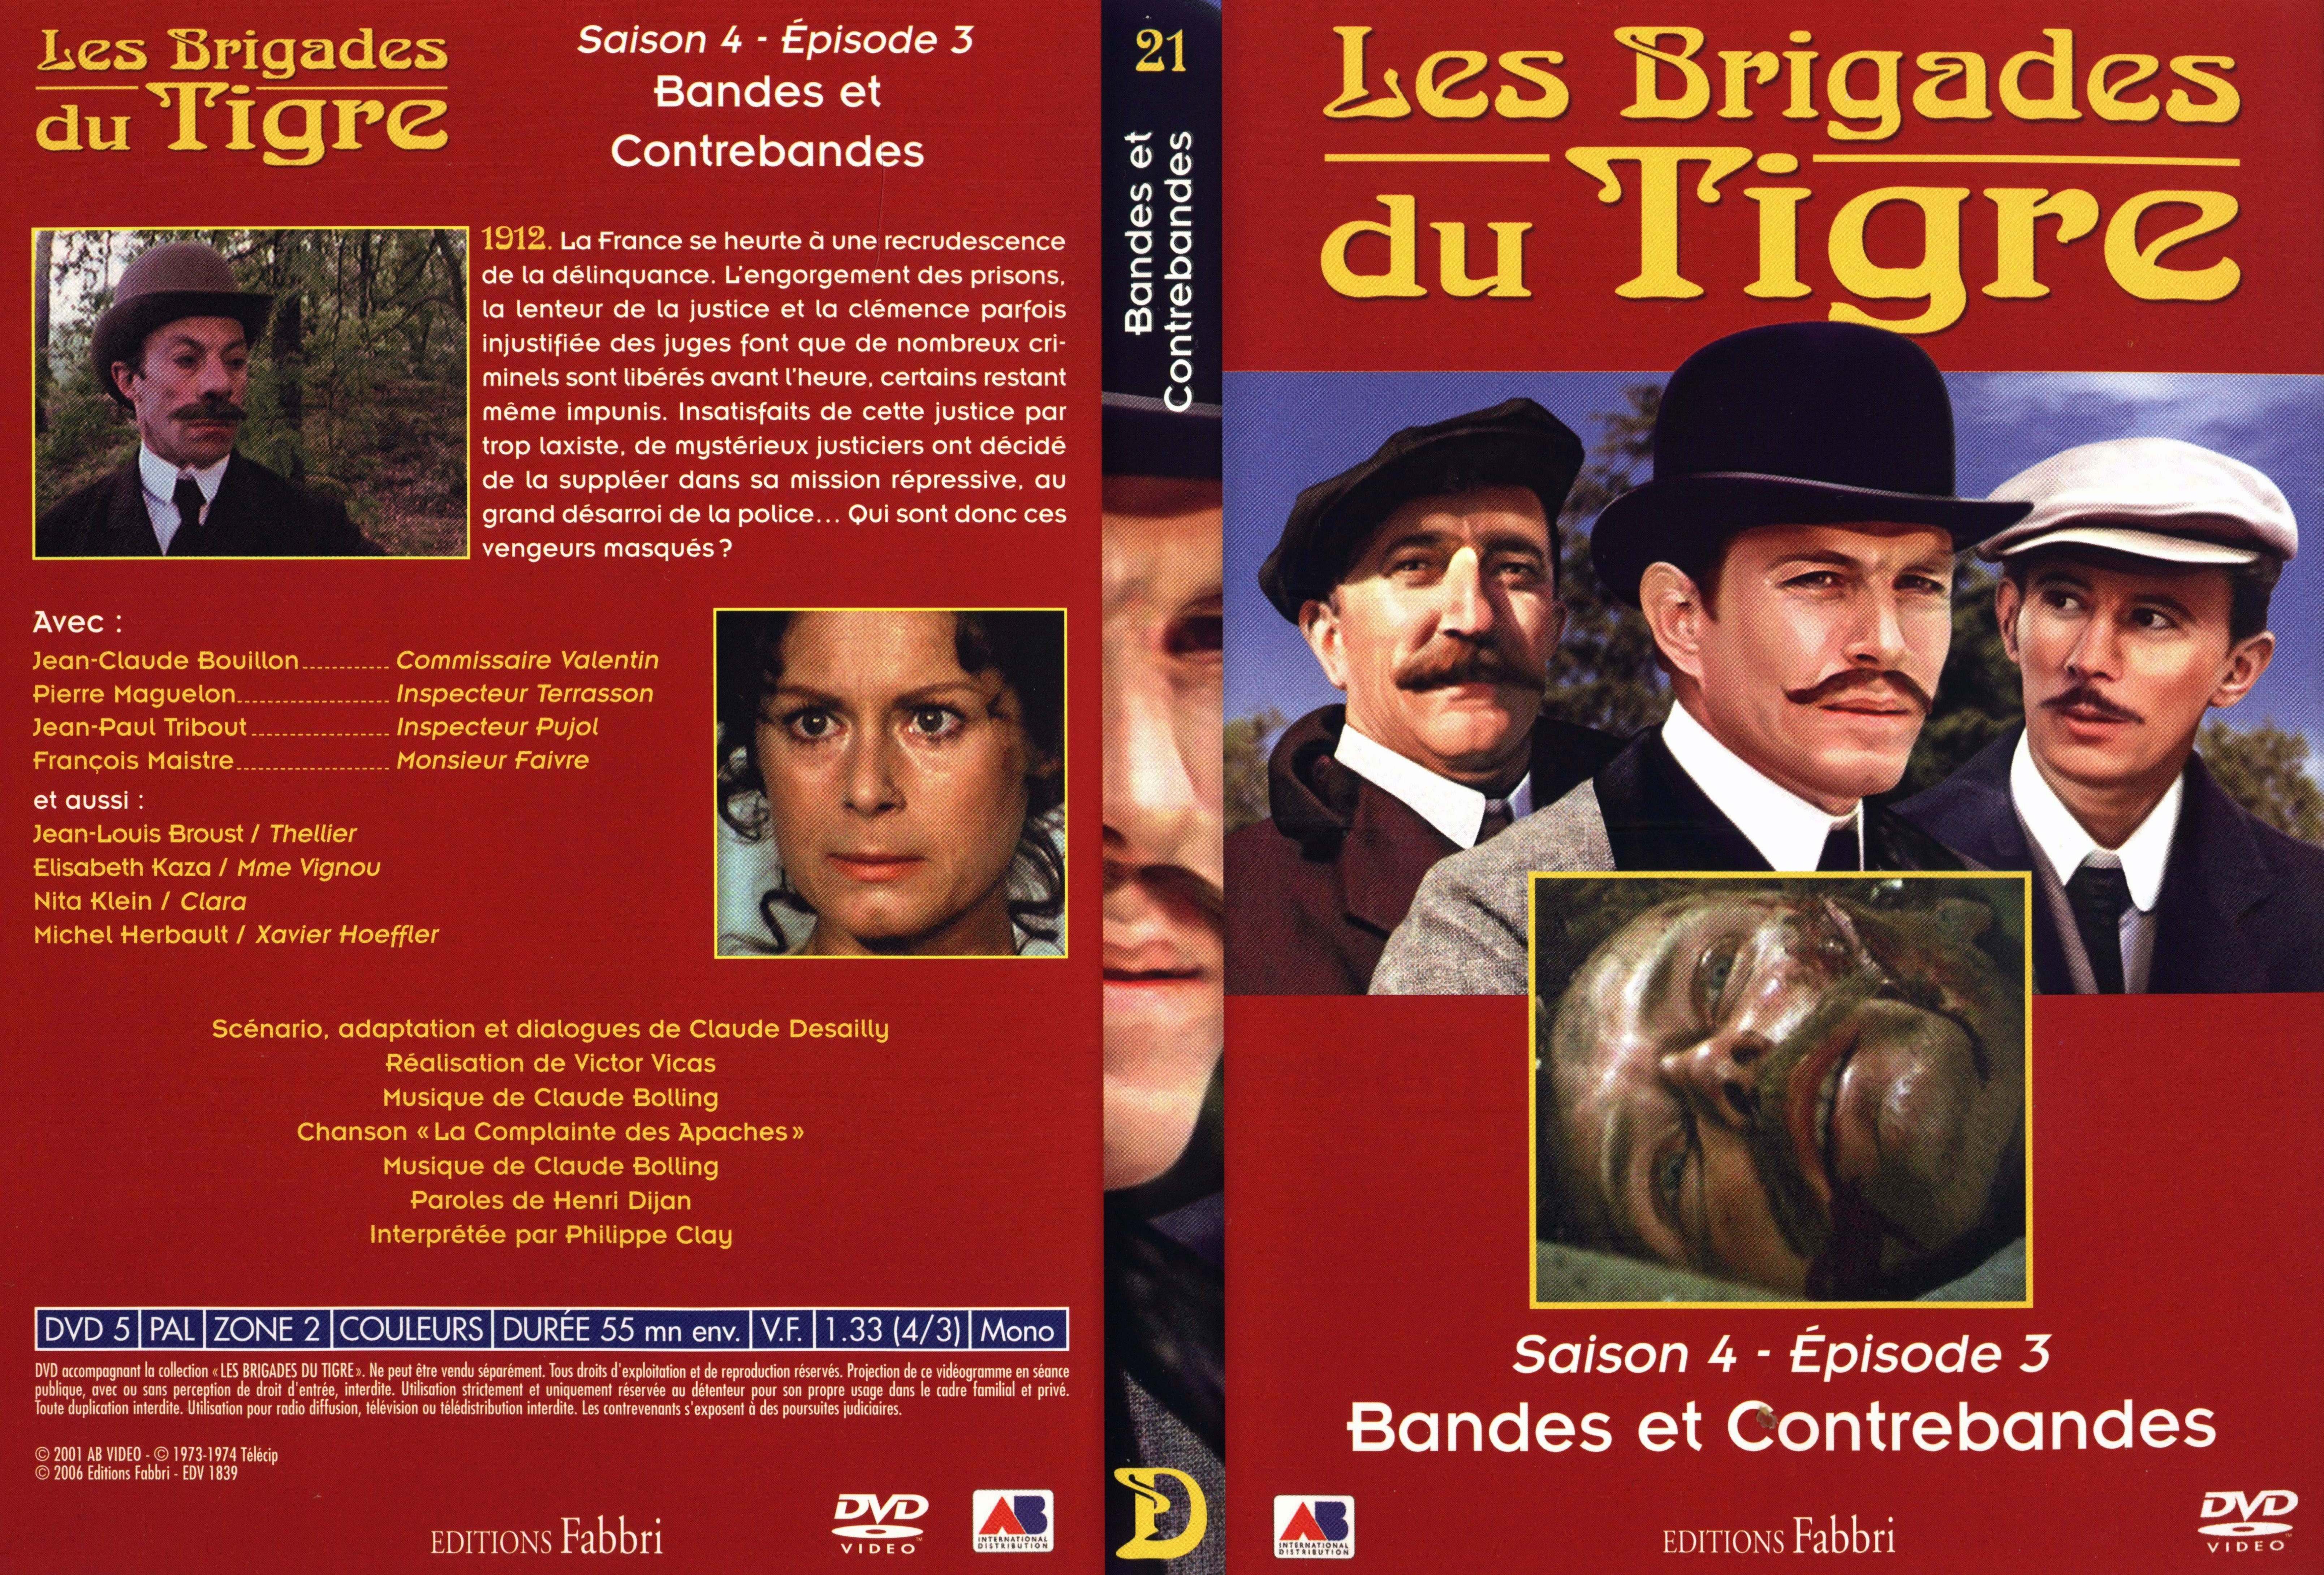 Jaquette DVD Les brigades du tigre saison 4 pisode 3